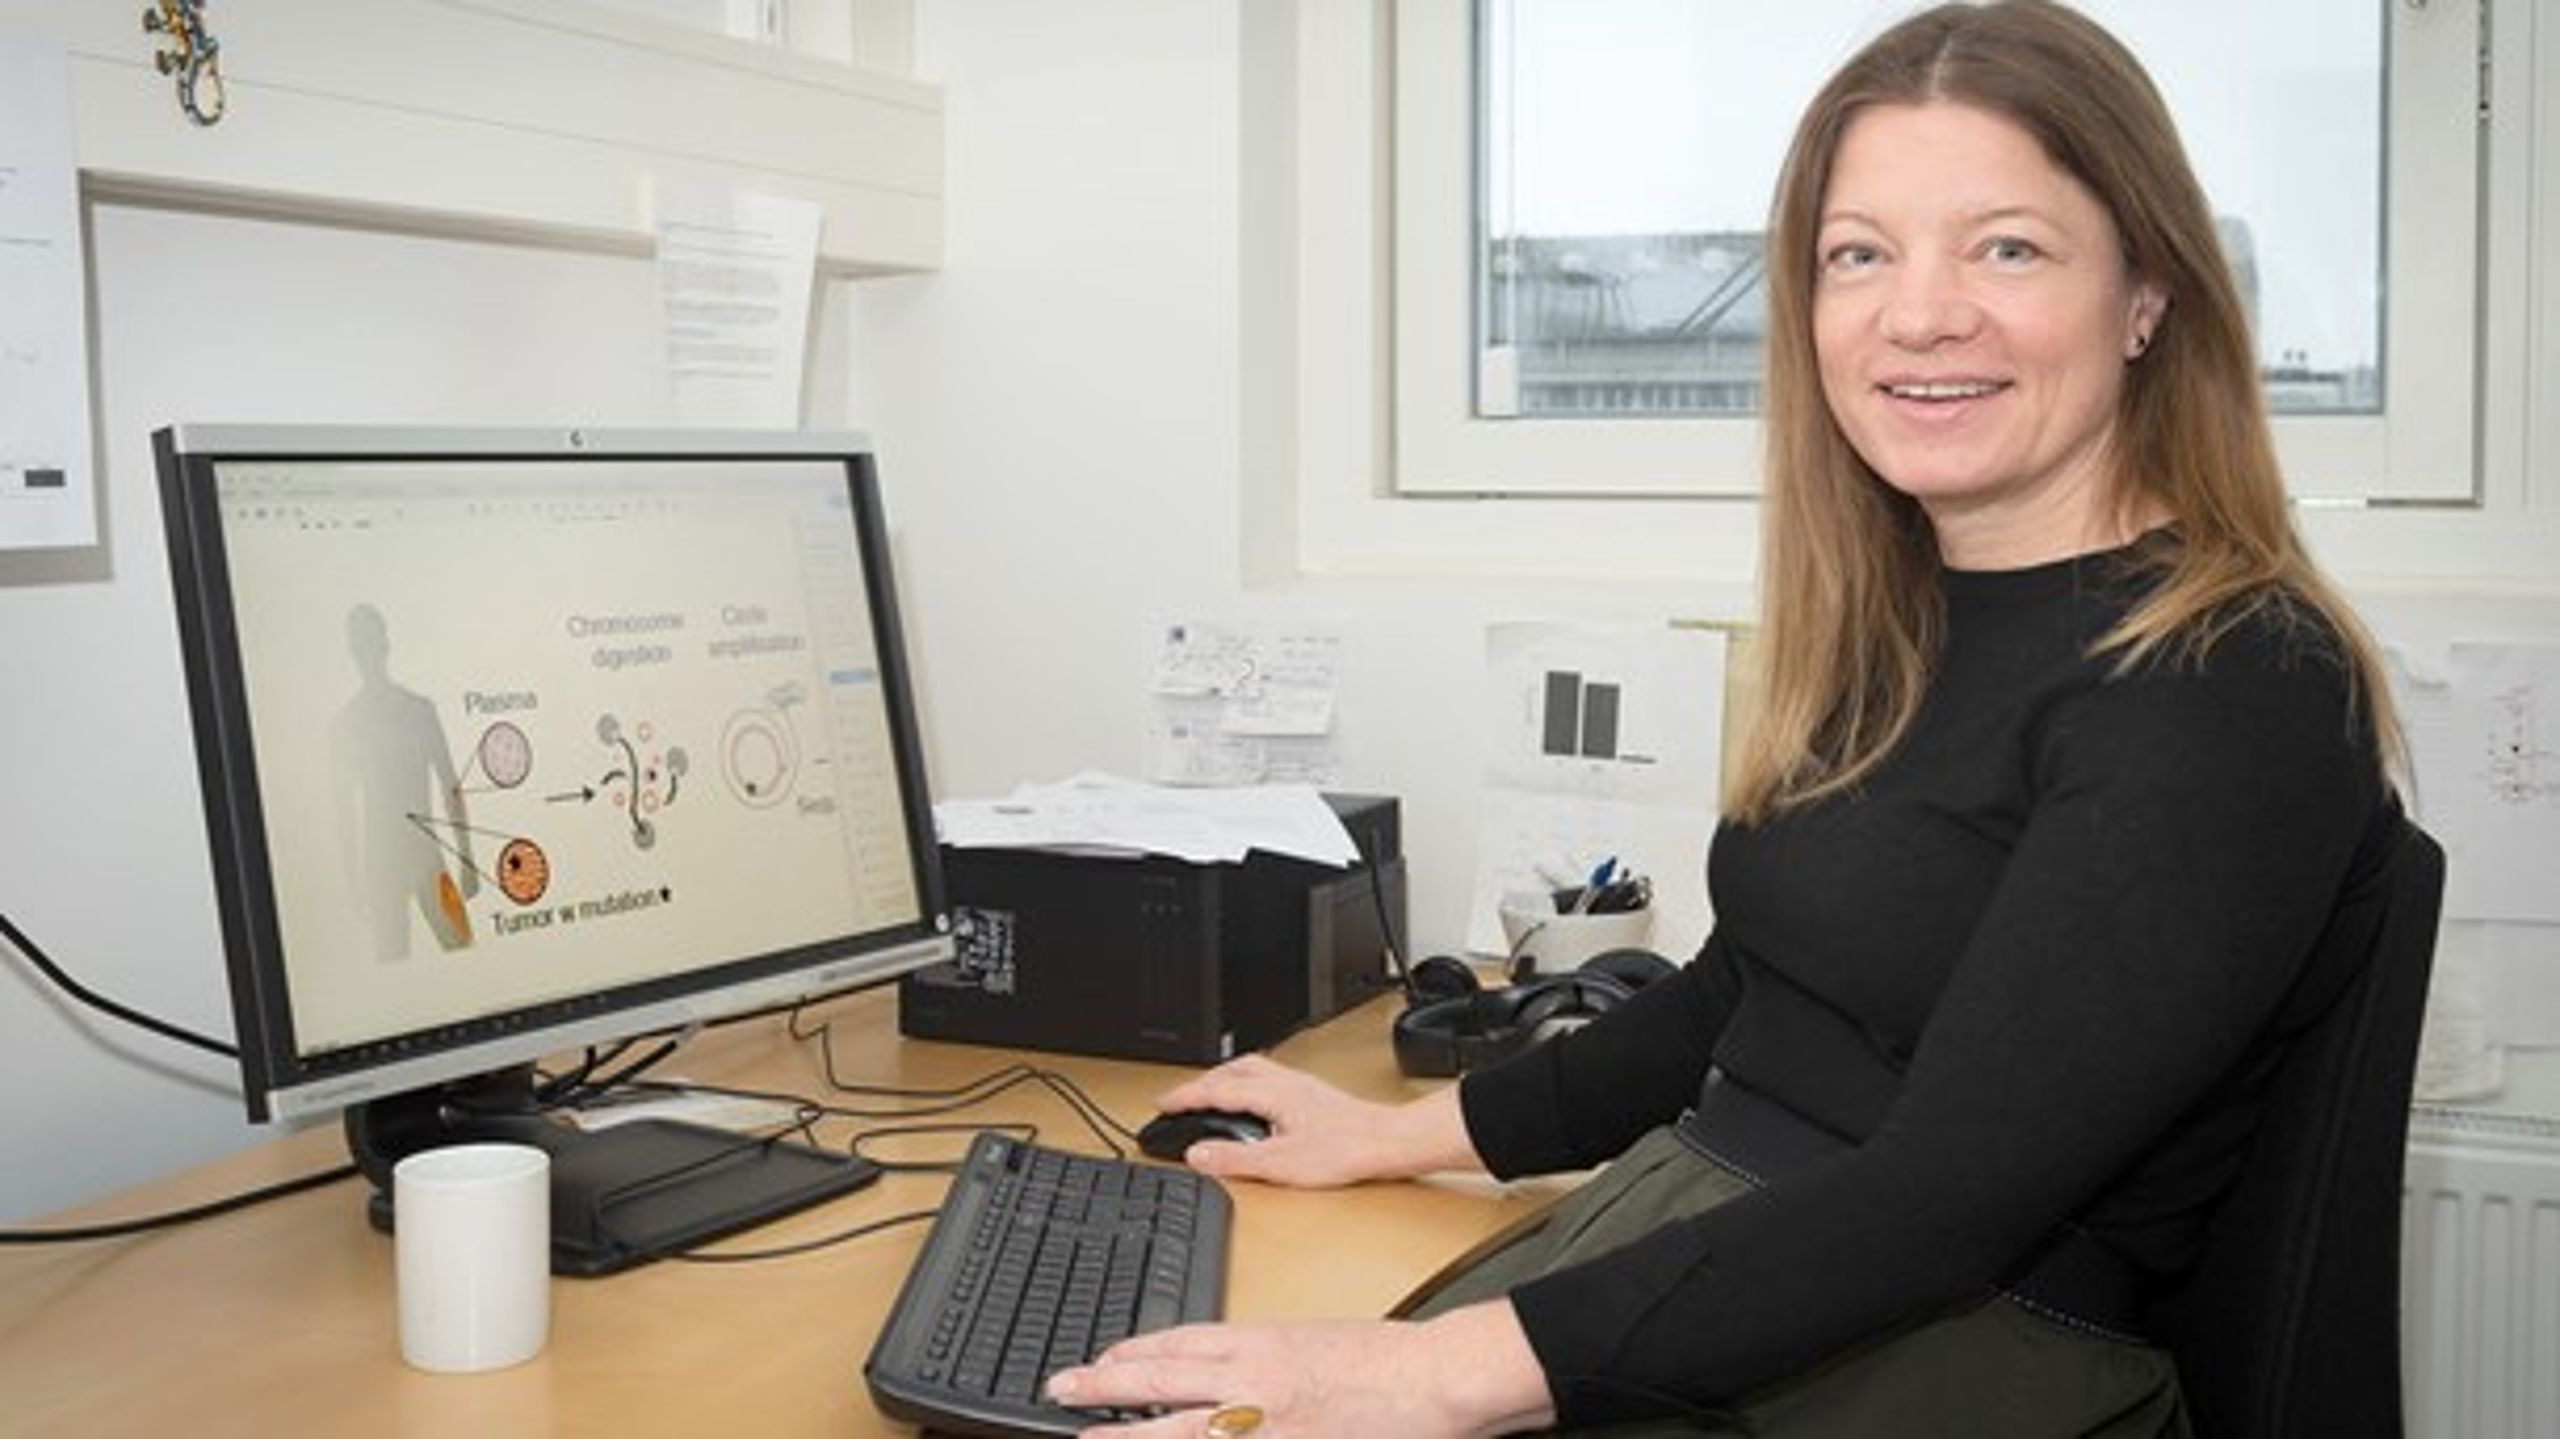 Birgitte Regenberg er leder af en forskningsgruppe&nbsp;på Københavns Universitet, som har fået bevilliget 13 millioner af Innovationsfonden til udvikling af en ny teknologi til diagnosticering af bugspytkirtelkræft.&nbsp;